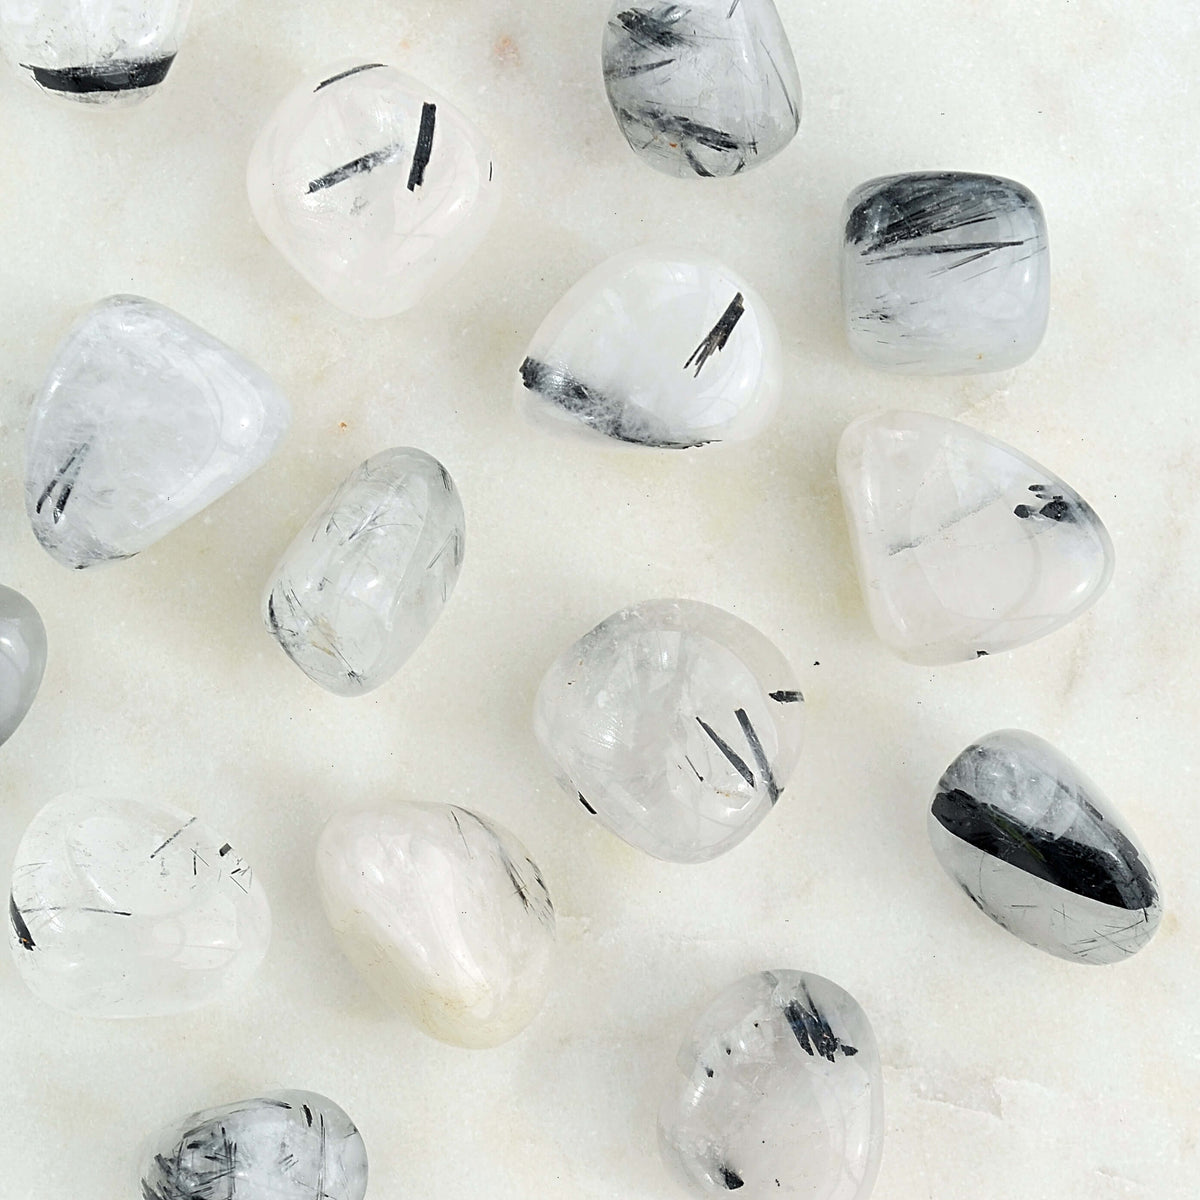 tourmaline in quartz tumbled crystals